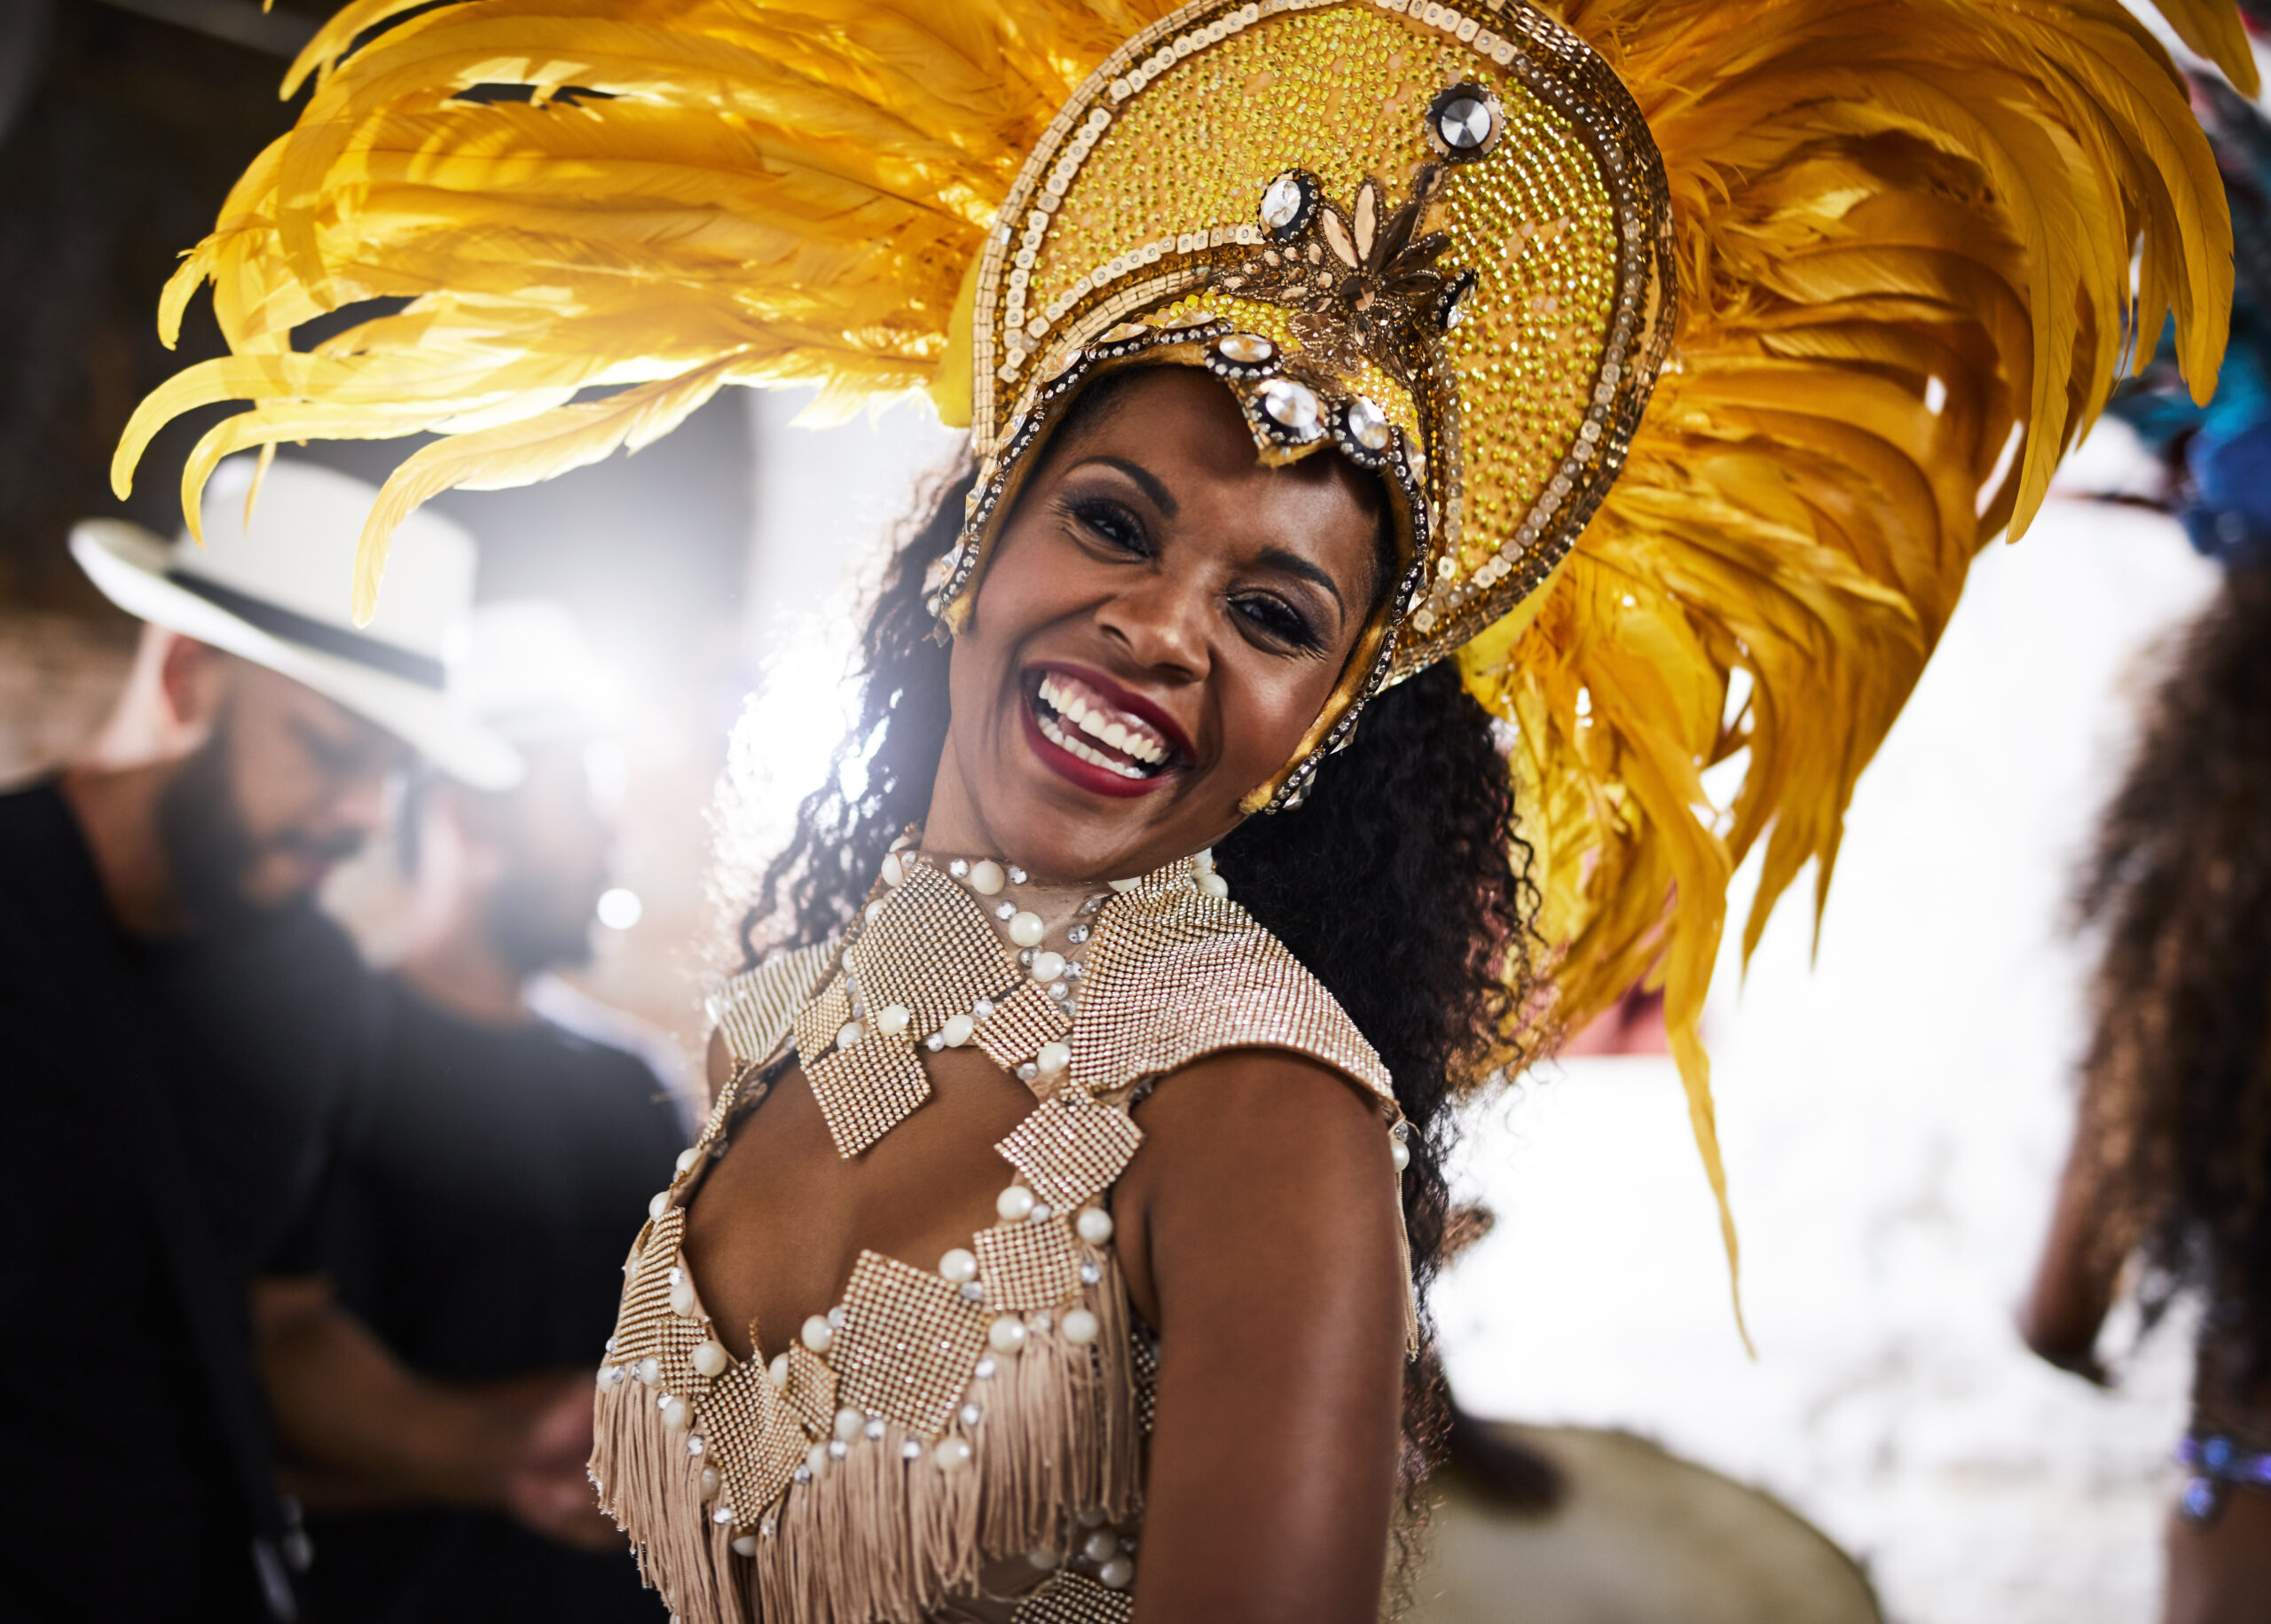 dance events in canada samba dancer at carnival